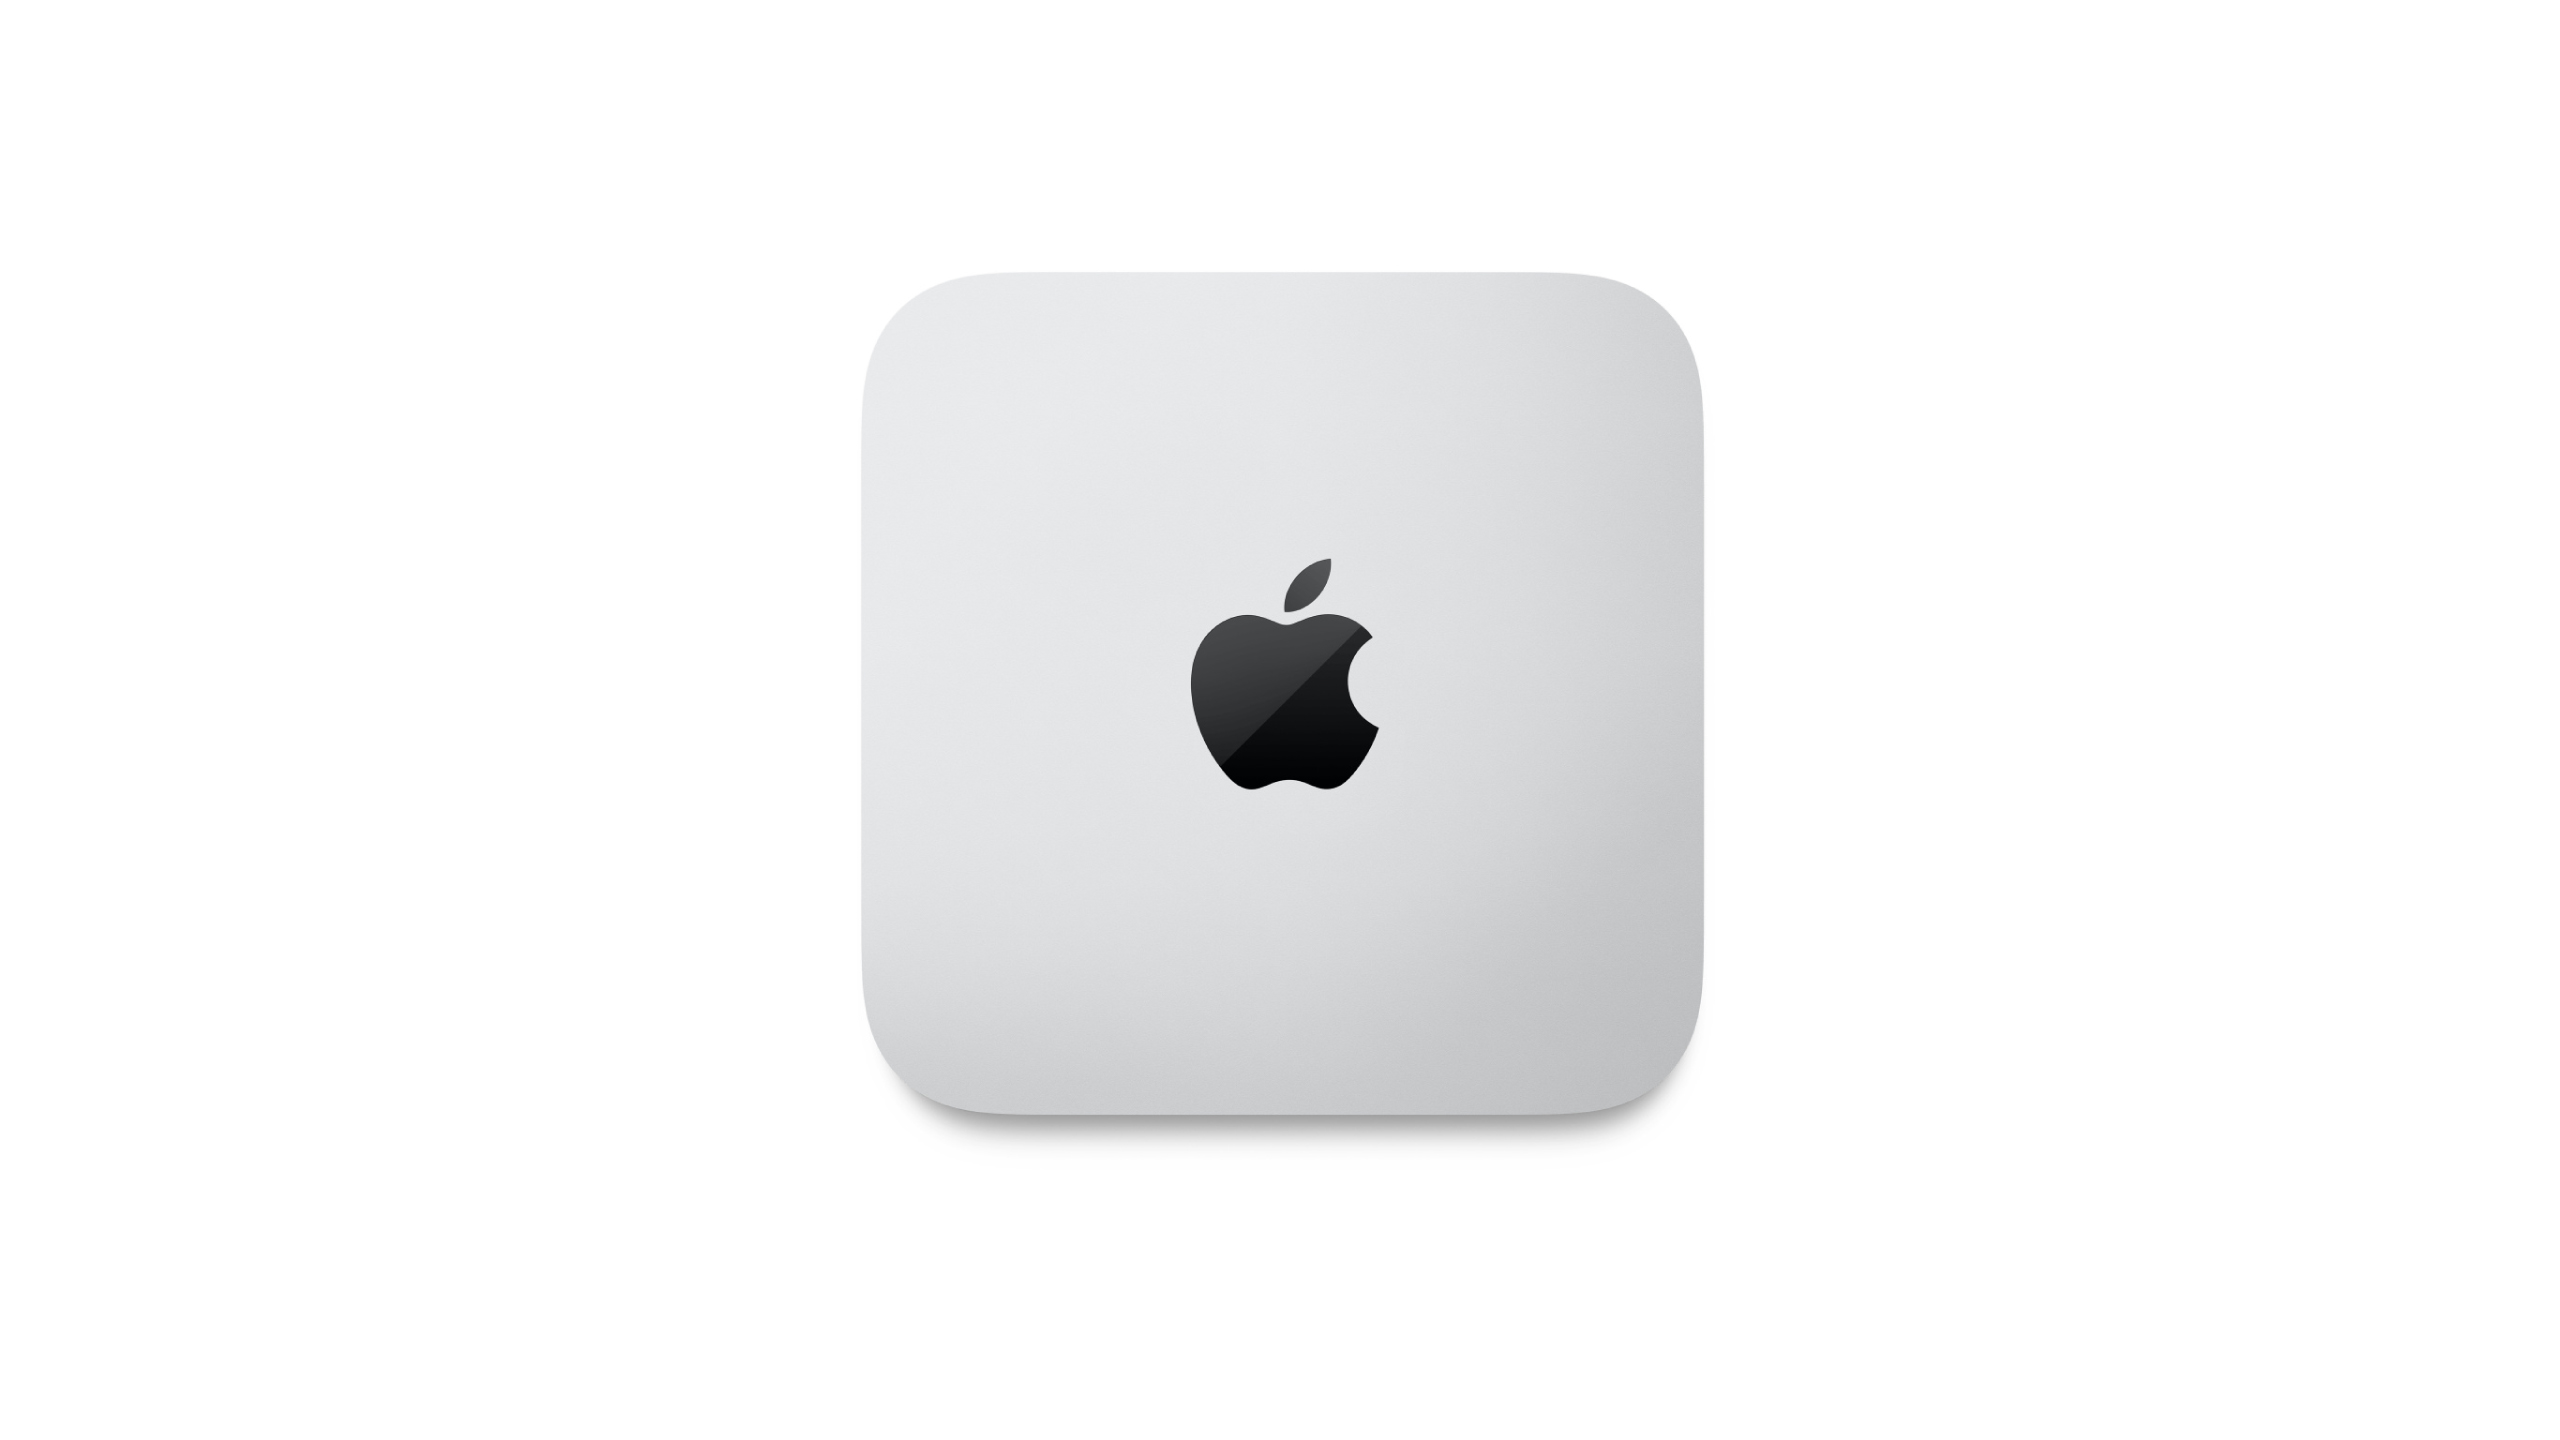 Apple Mac mini - M2 Pro - 16 GB - SSD 512 GB - MNH73LL/A - Mini PCs 